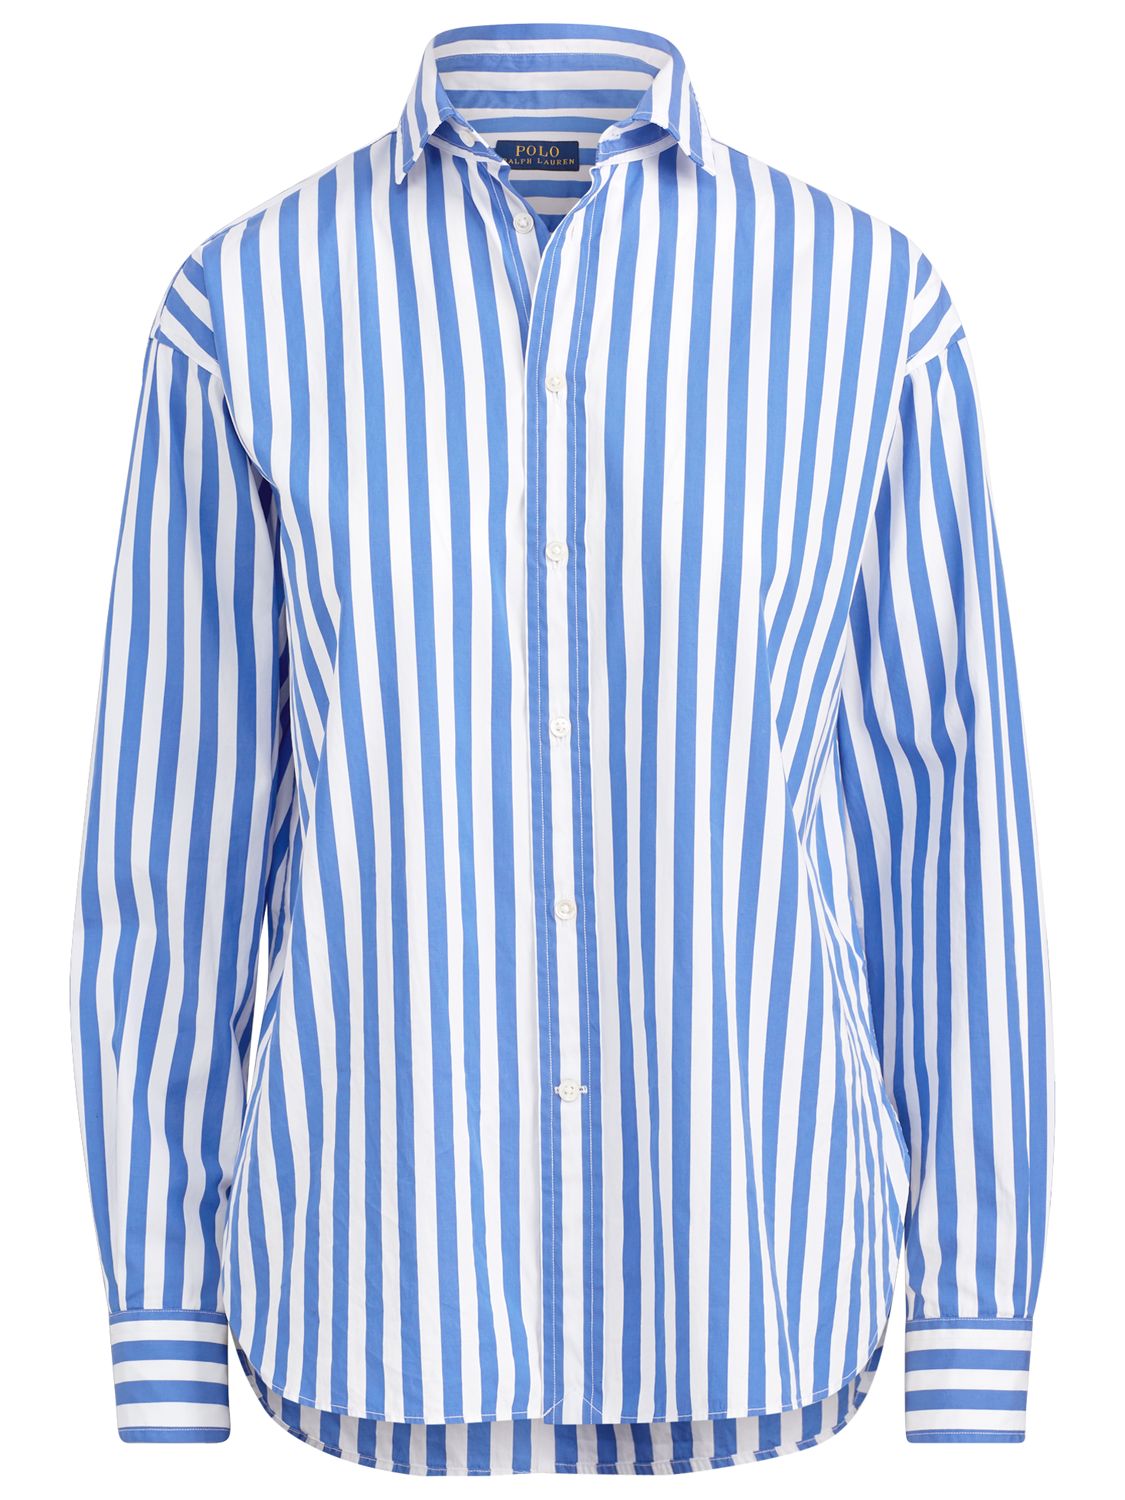 polo ralph lauren blue striped shirt